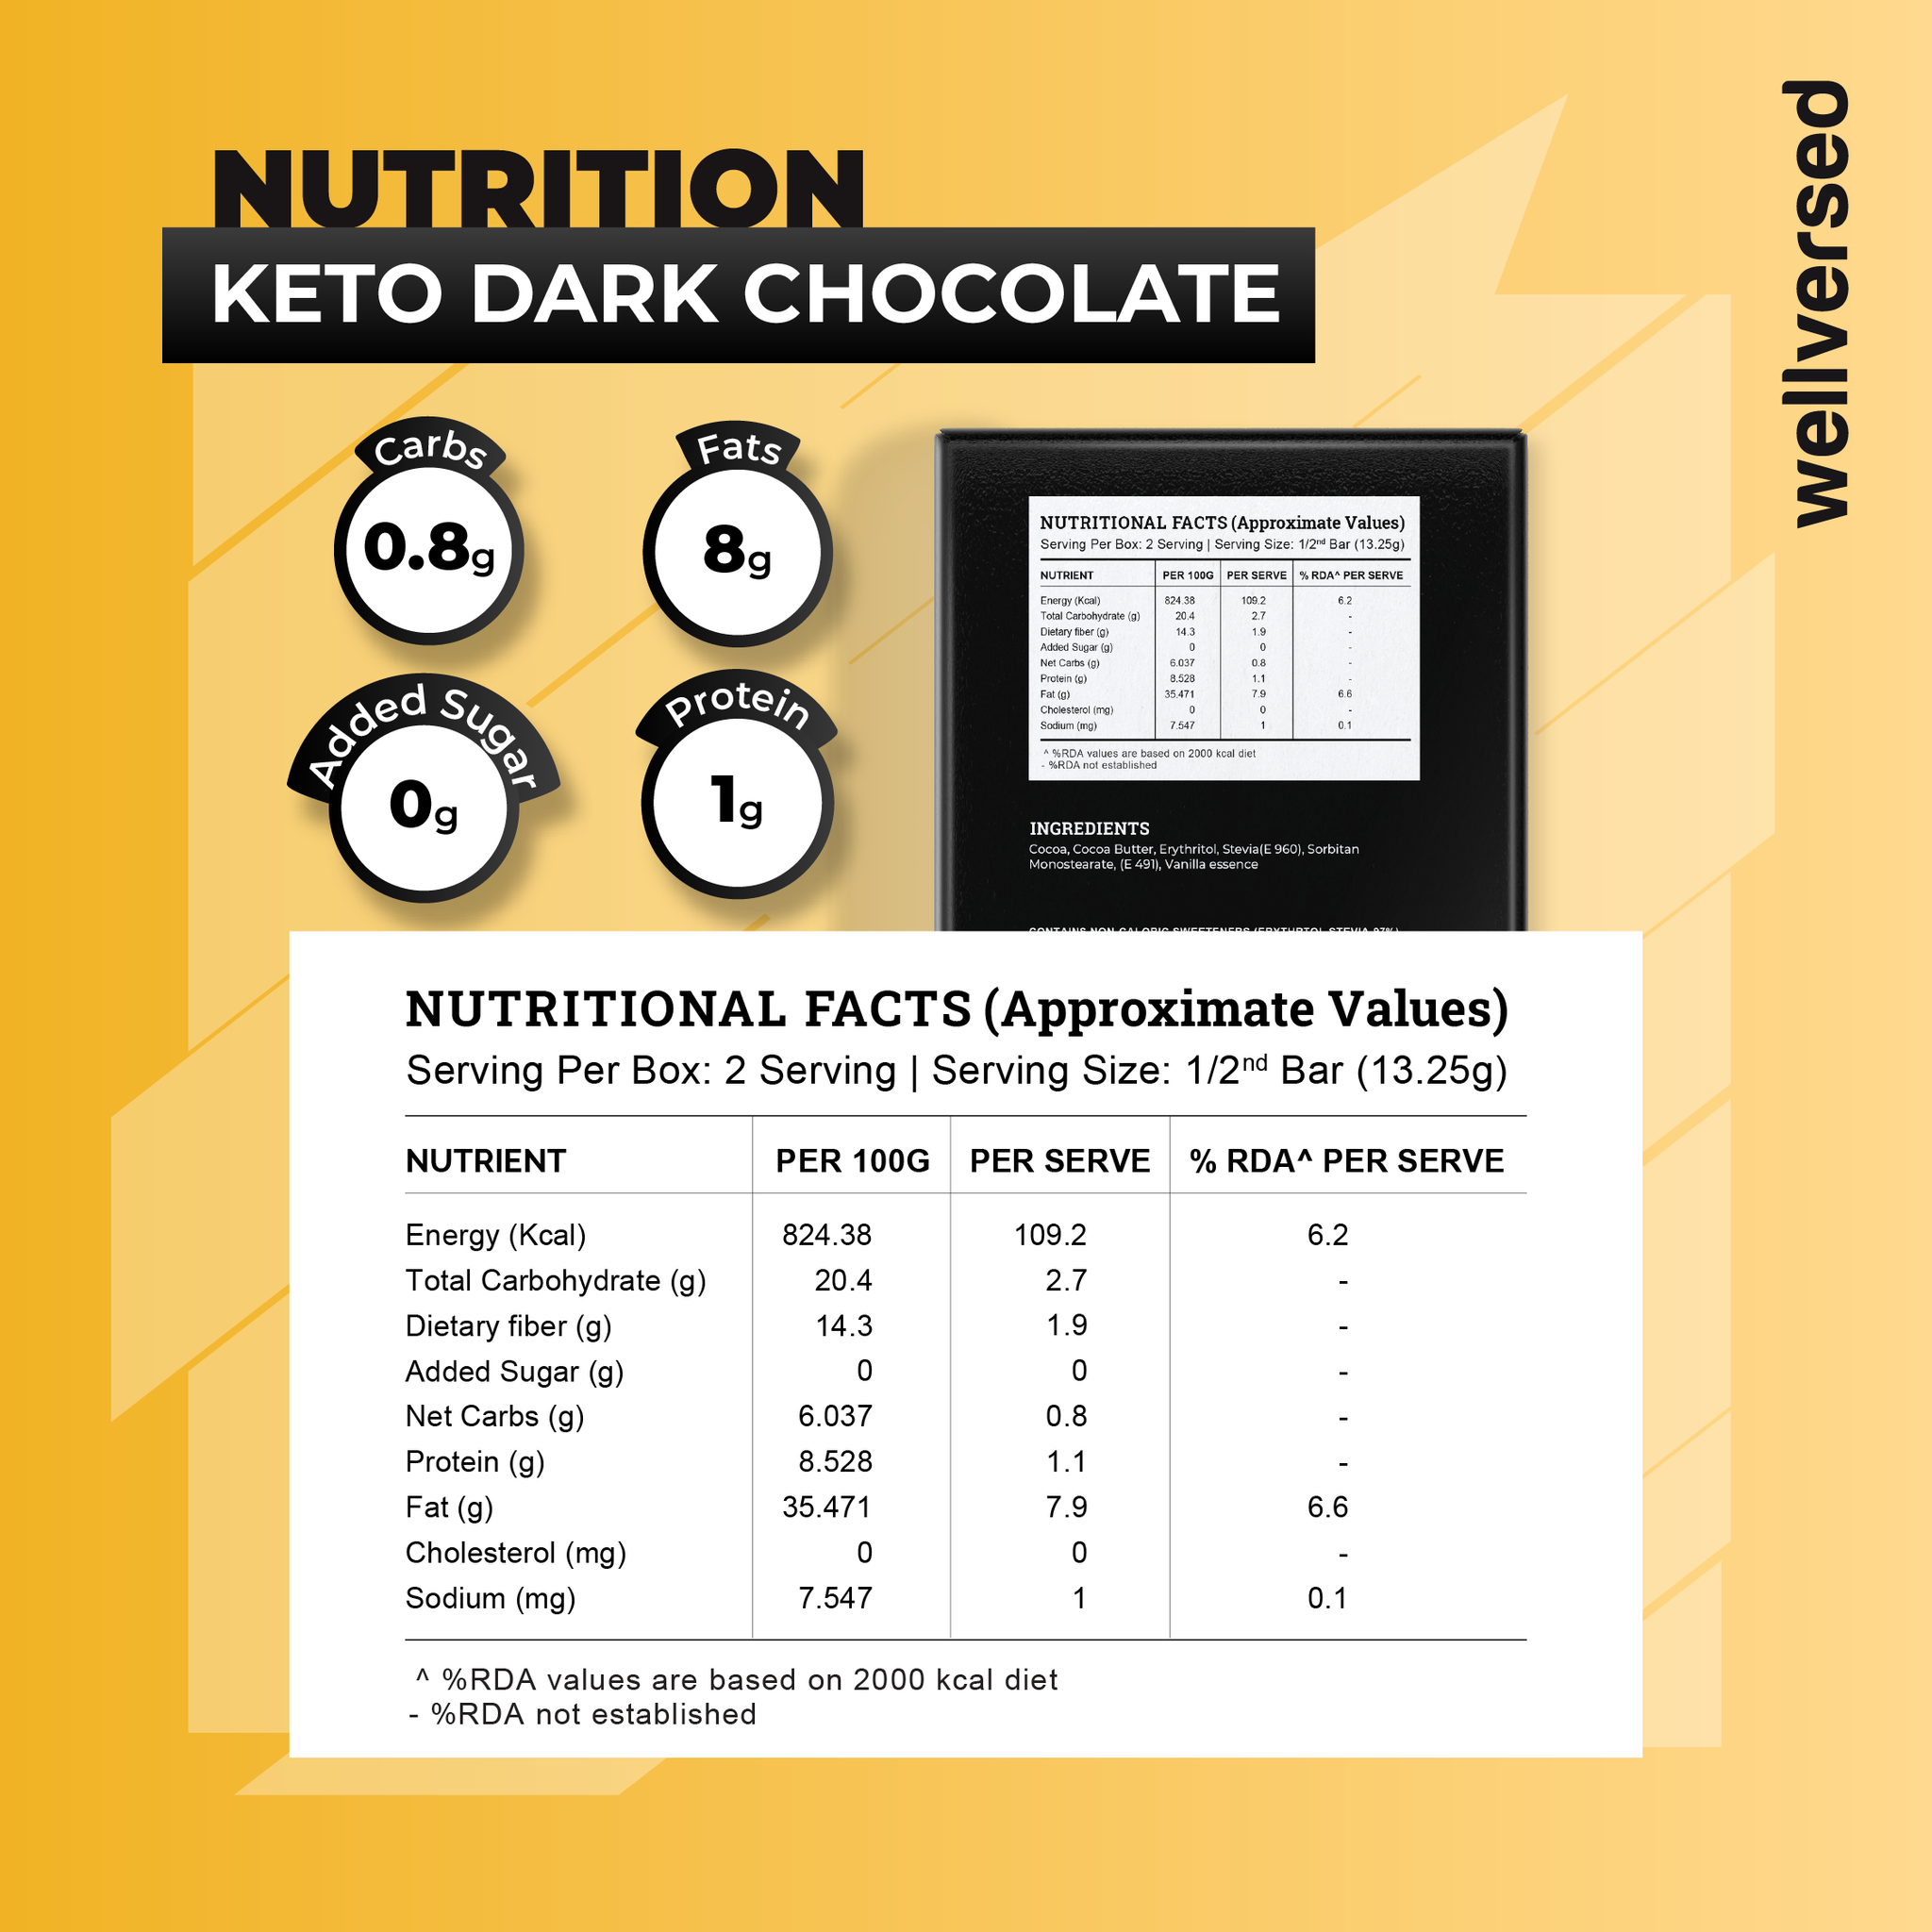 Ketofy - Dark Chocolate (26.5g) | Zero Sugar Dark Chocolate | Indulgent Taste | 0.3g Net Carbs/Serv. | Vegan Chocolate Bar | Keto Chocolate